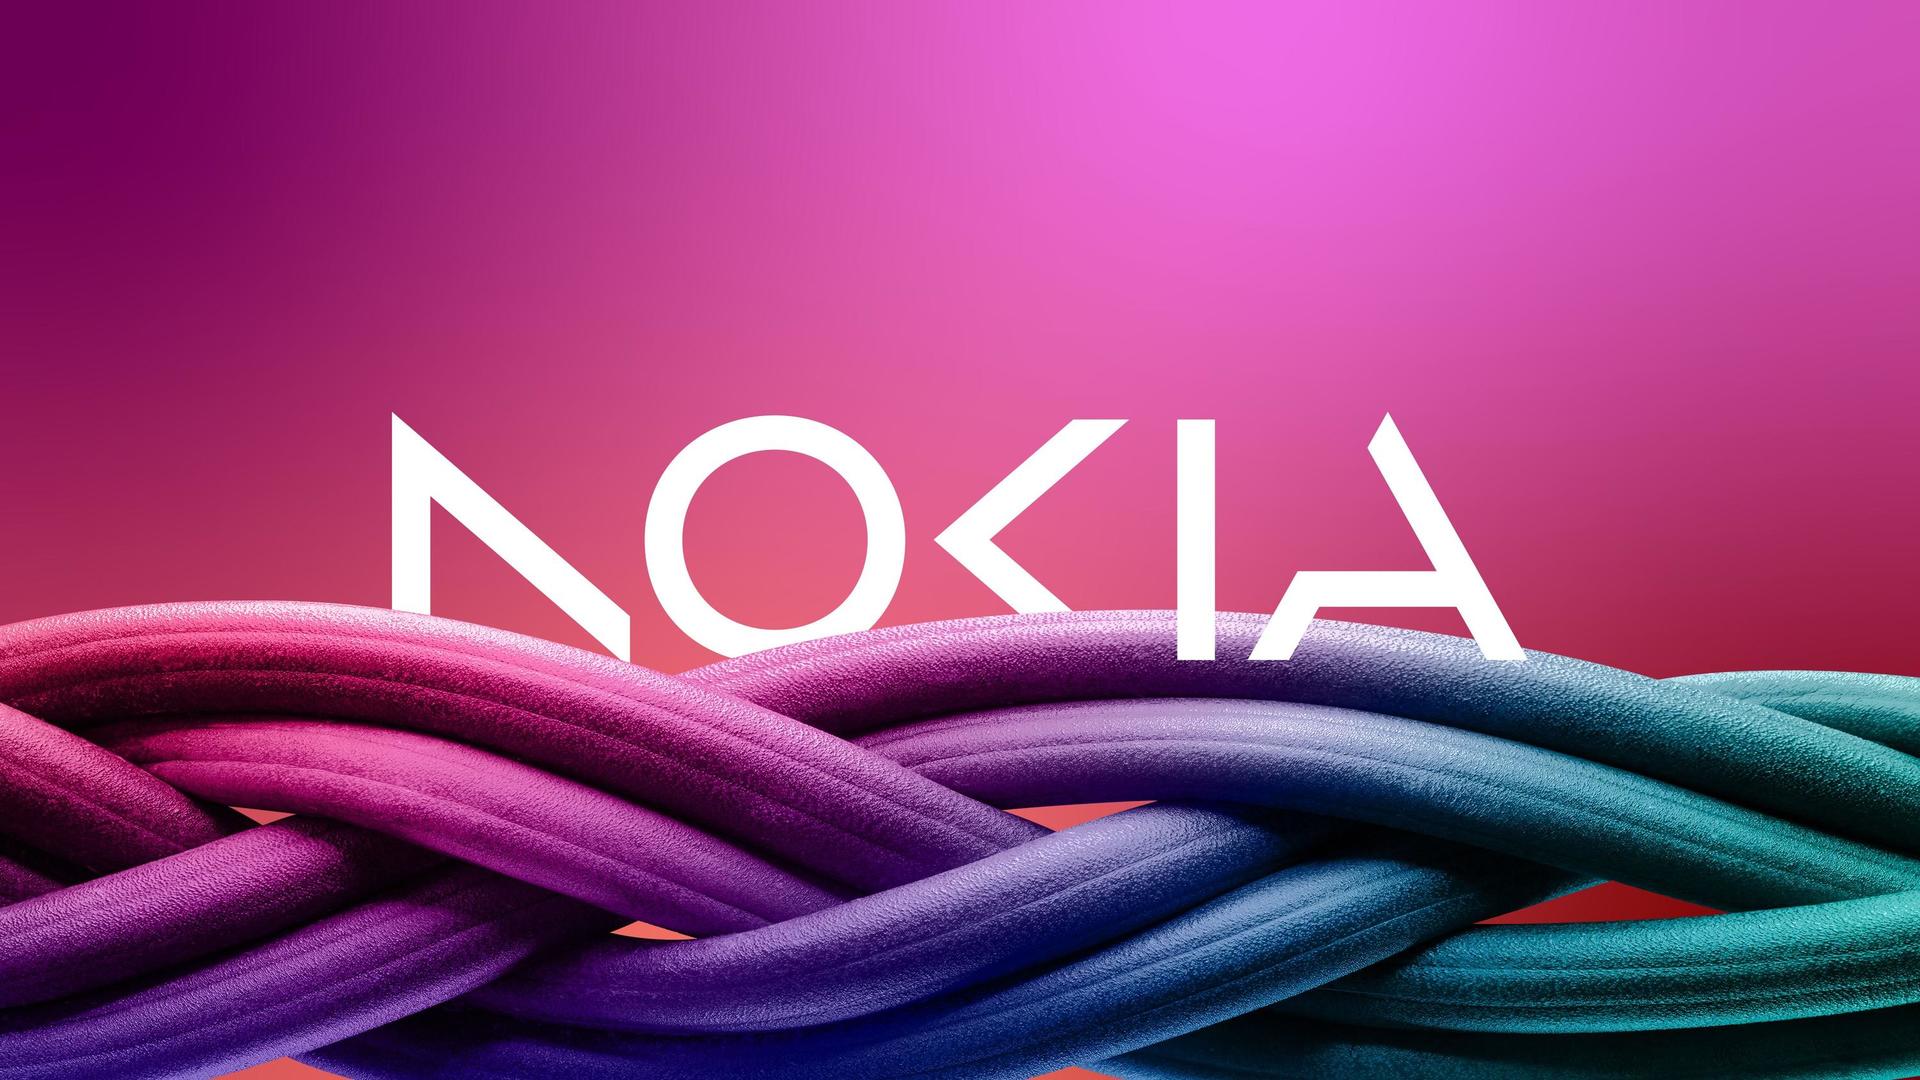 A questão mais importante entre Microsoft e Nokia: Quem é a dona do jogo  Snake? 